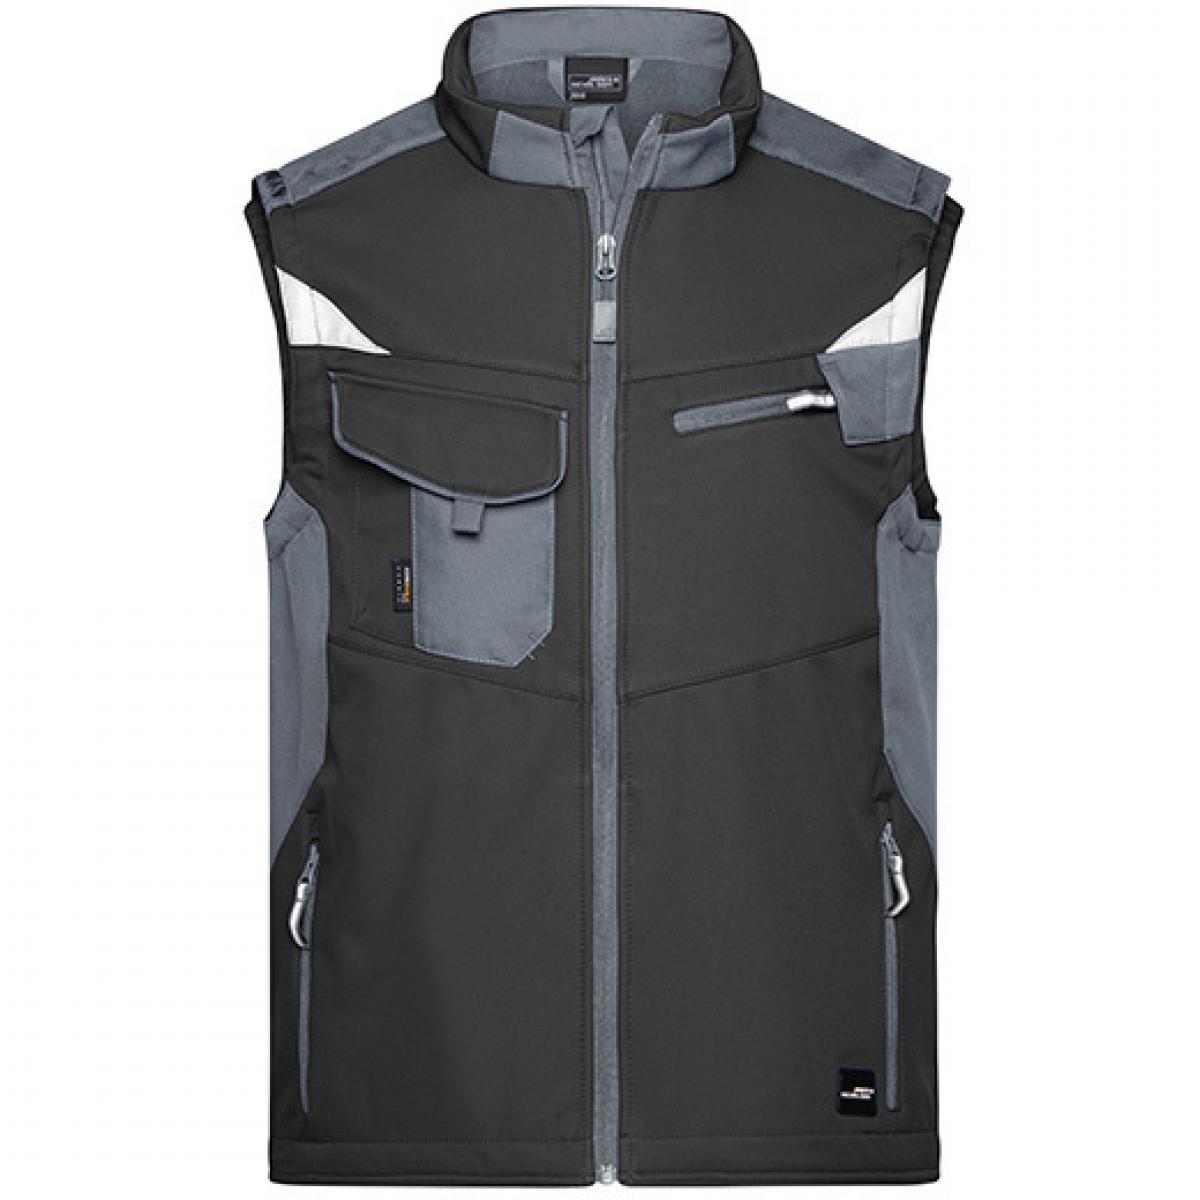 Hersteller: James+Nicholson Herstellernummer: JN845 Artikelbezeichnung: Herren Jacke, Workwear Softshell Vest -STRONG- Farbe: Black/Carbon